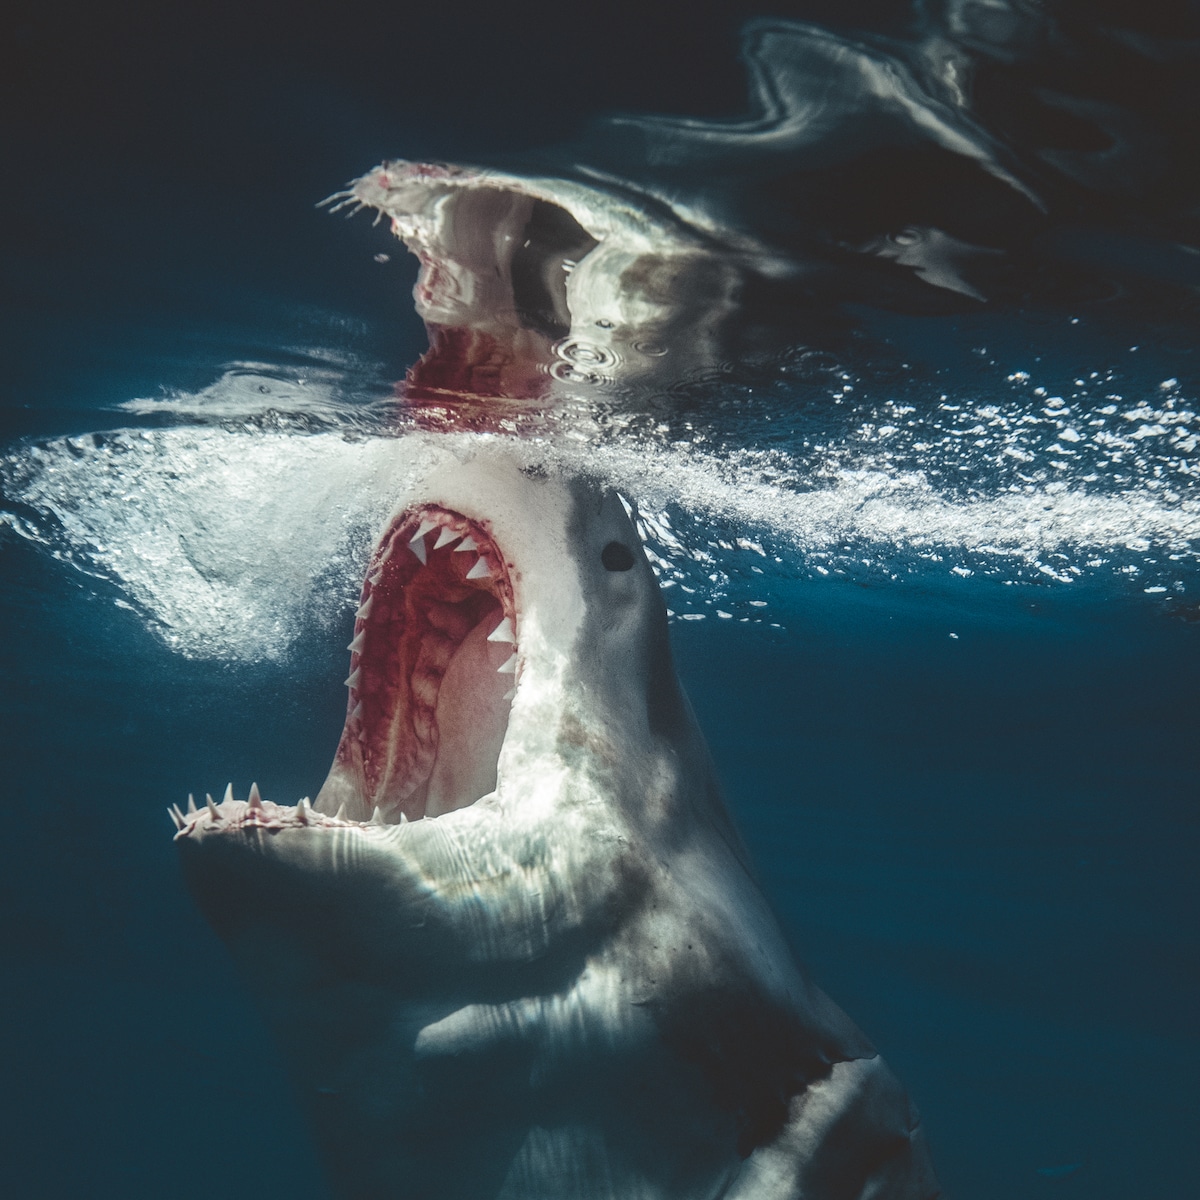 Euanart-Jaws-Shark-Photo-4